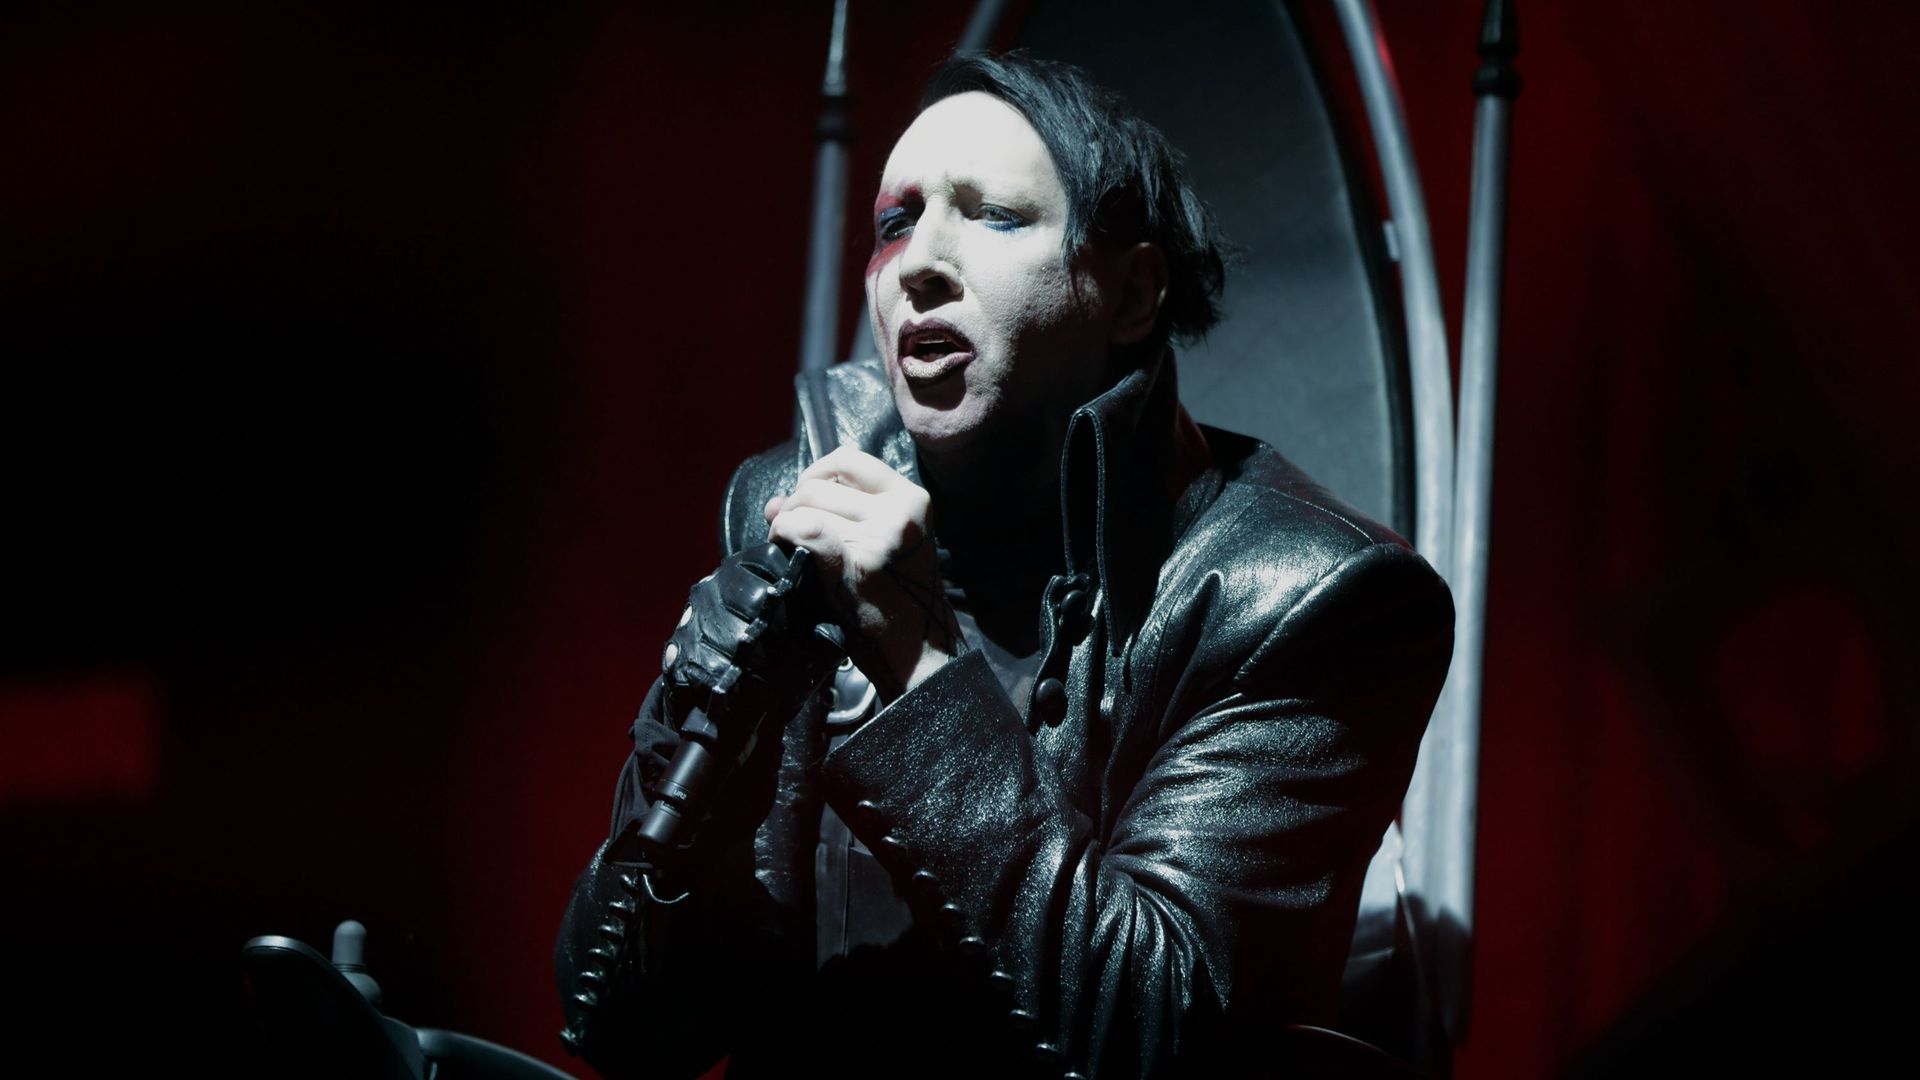 Marilyn Manson durant la tournée "Heaven Upside Down" en novembre 2017 dans la salle Mitsubishi Electric de Düsseldorf.